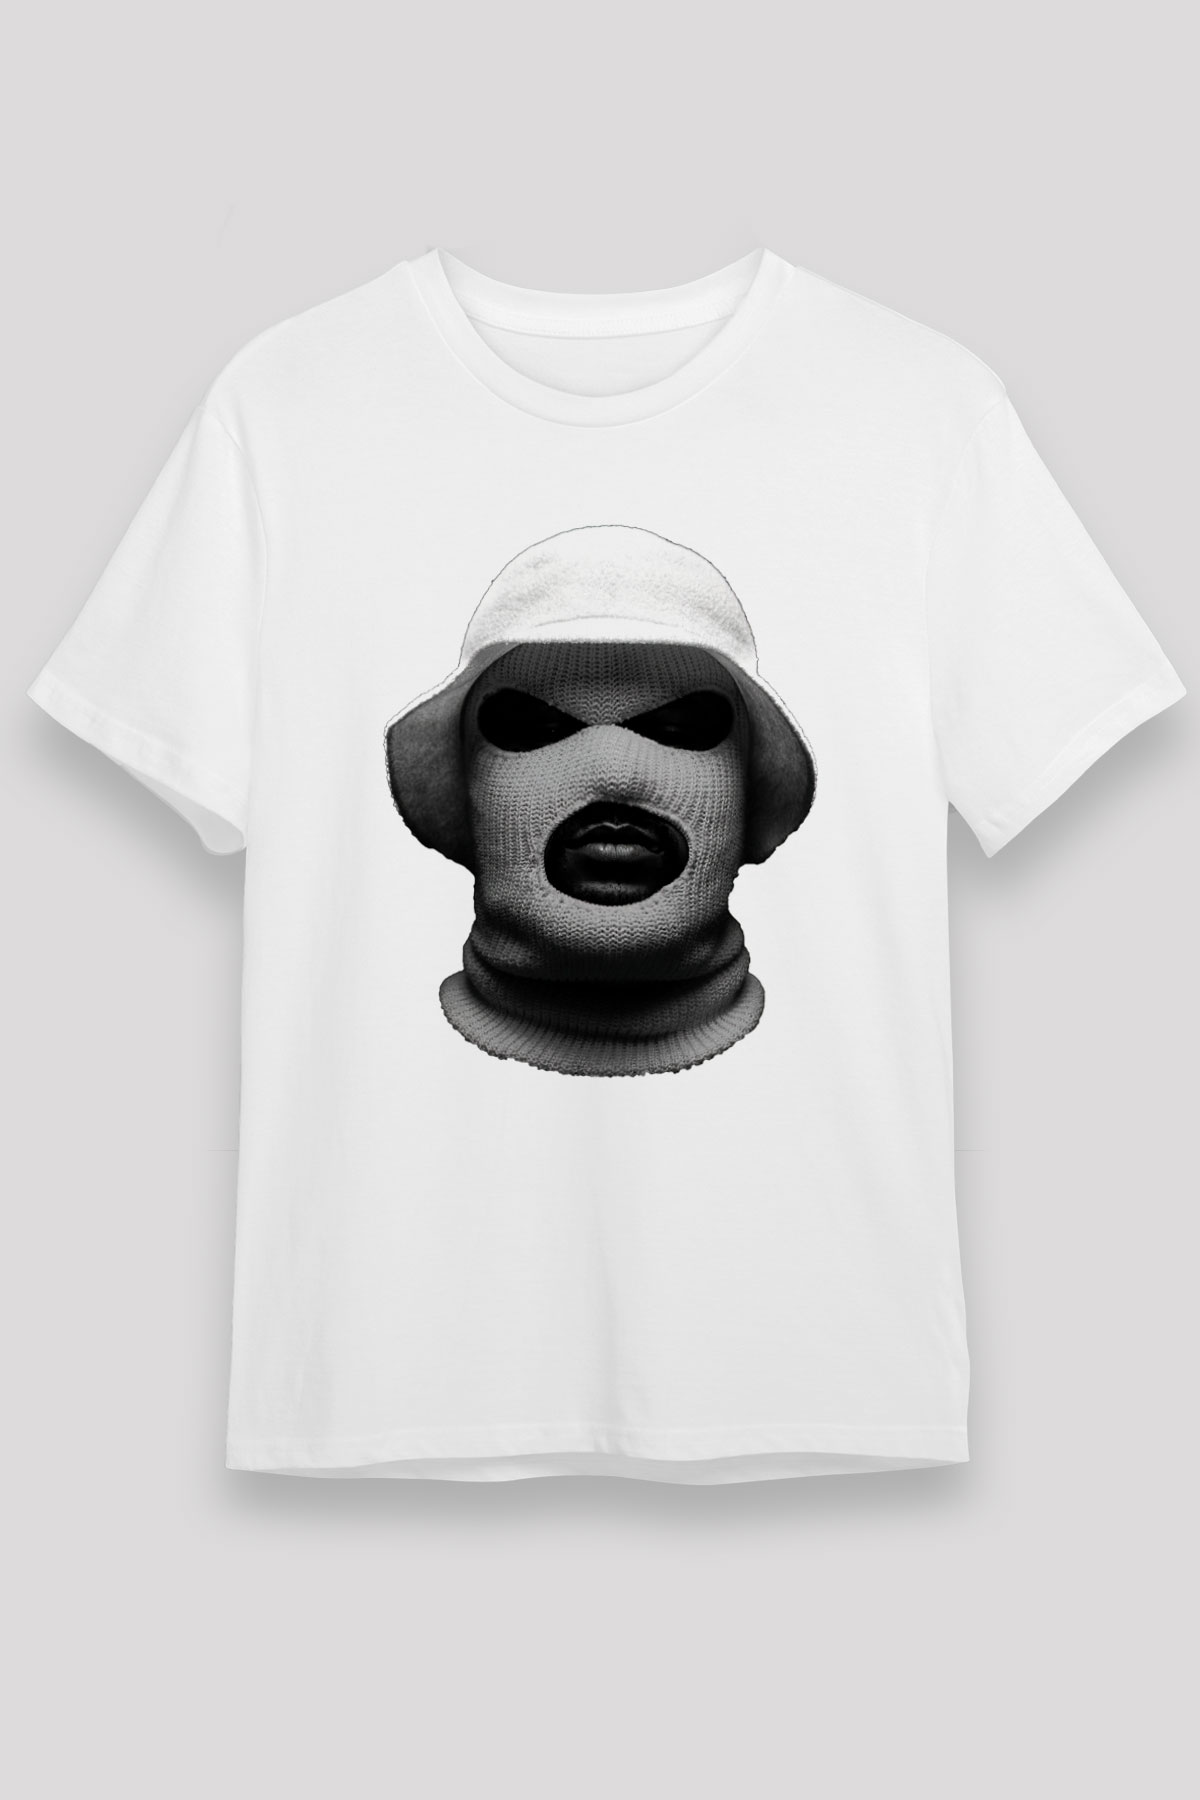 Schoolboy Q T shirt,Hip Hop,Rap Tshirt 10